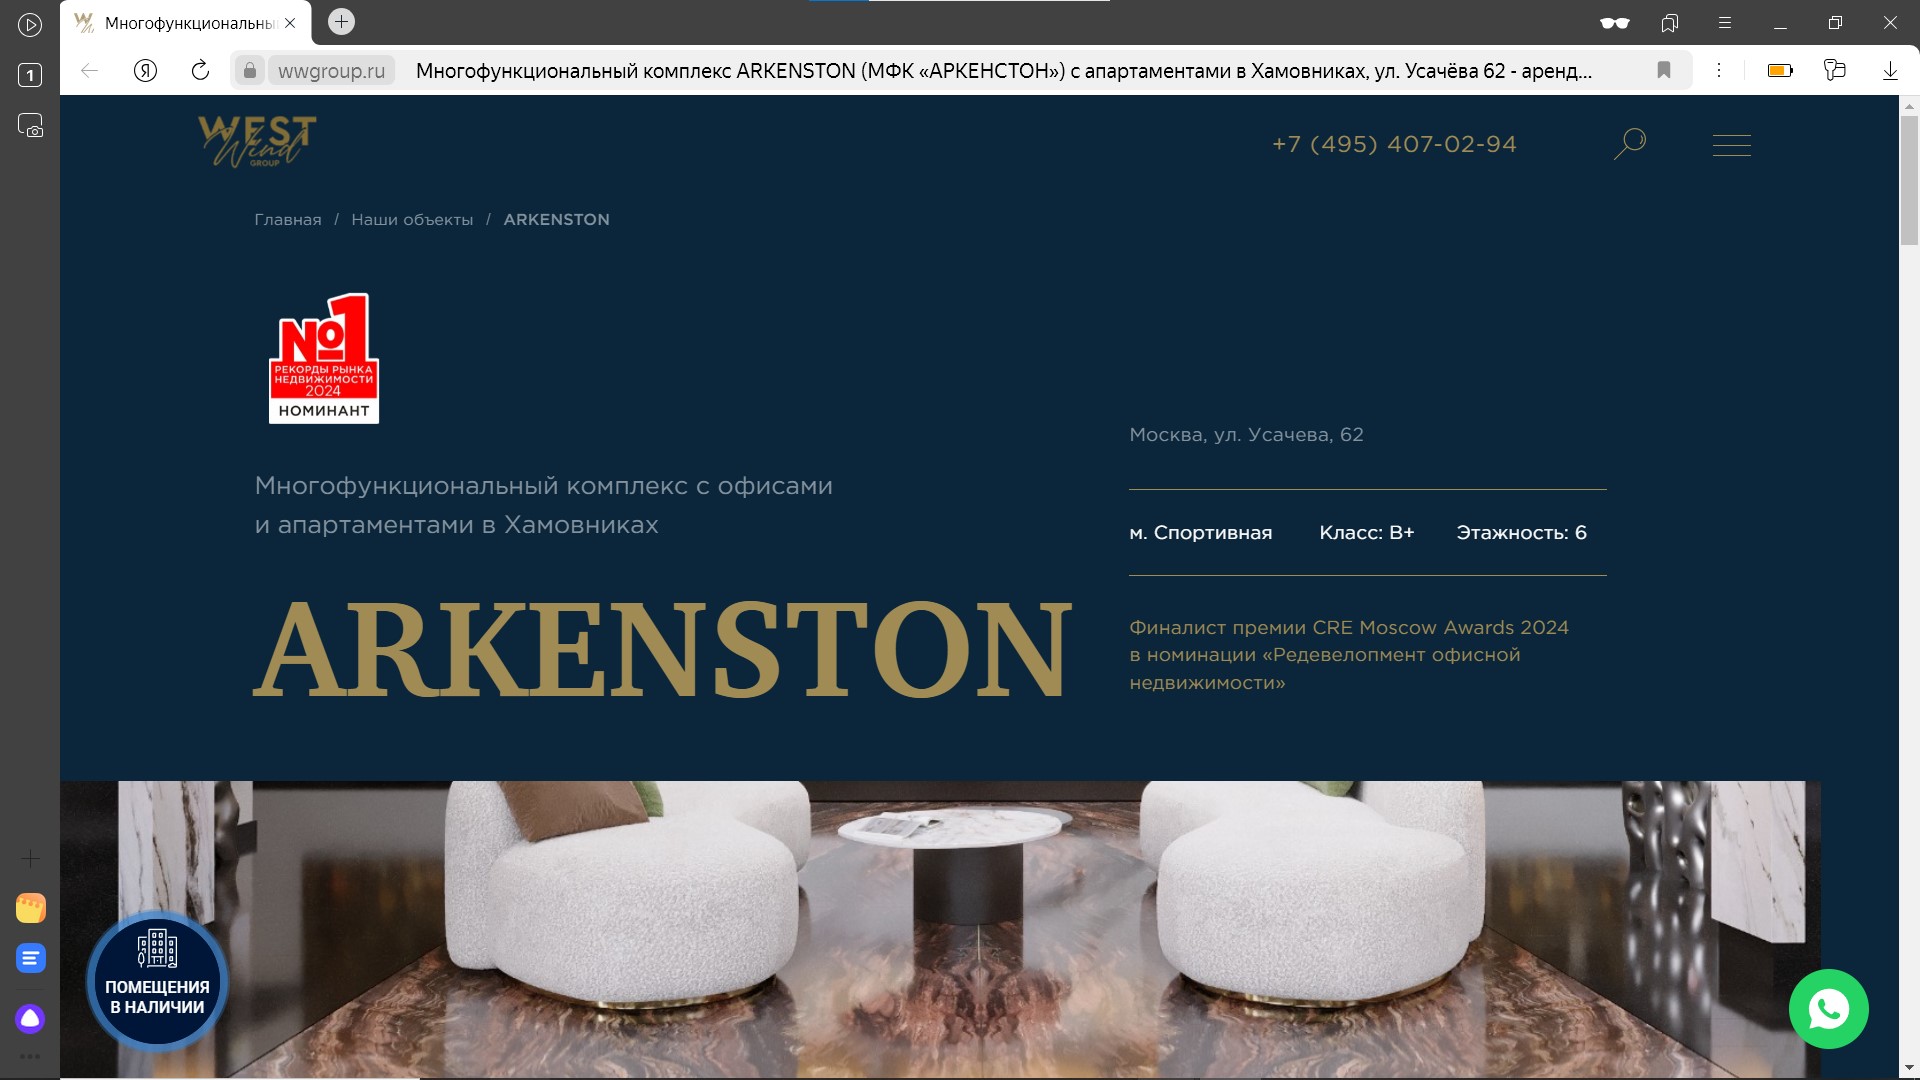 arkenston_website.jpg